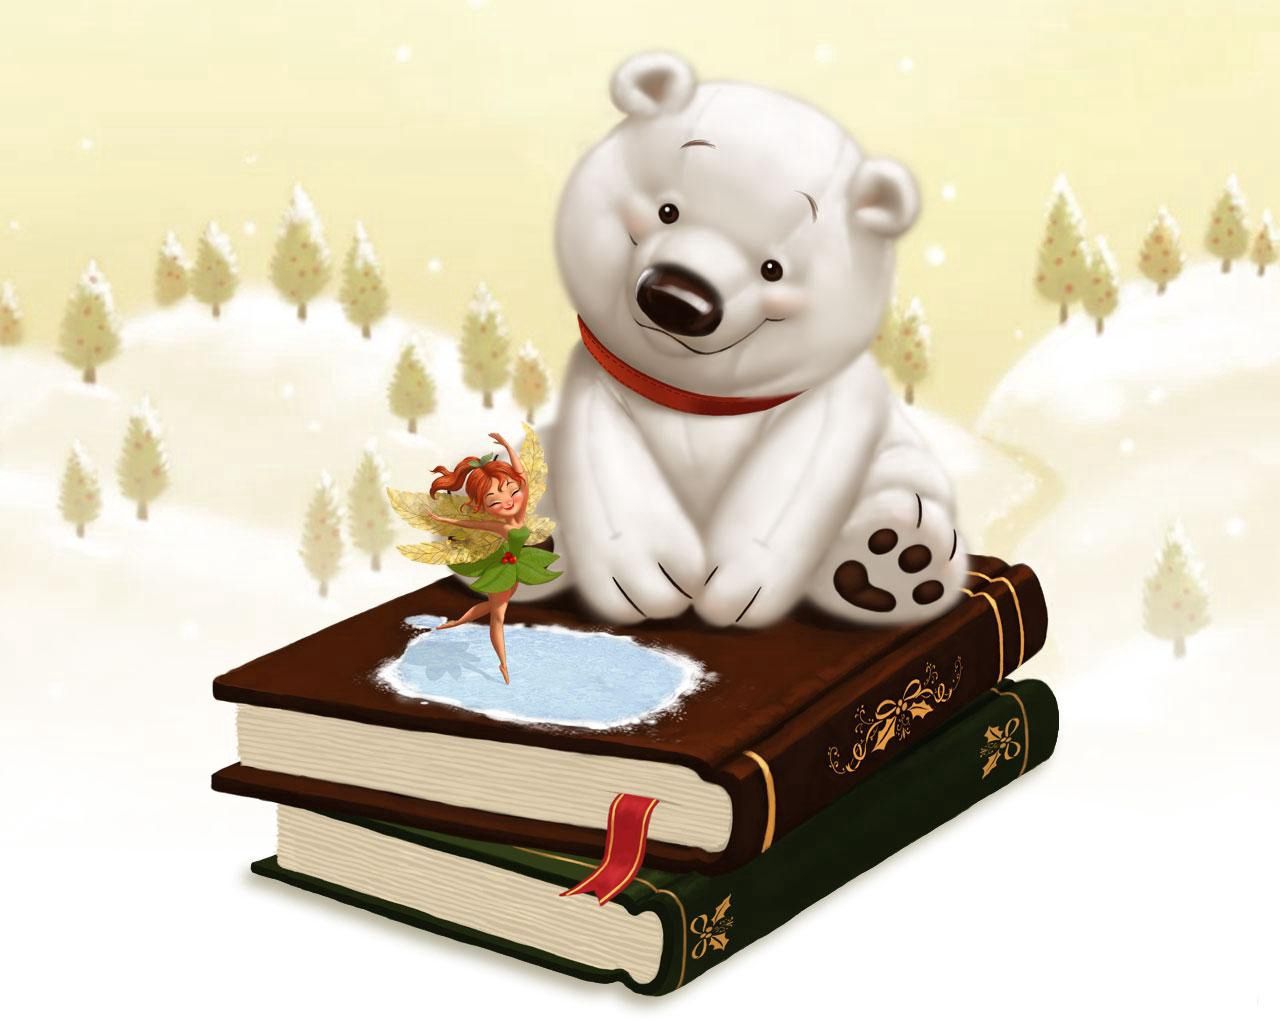 books, art, fairy tale, bear, childhood, story wallpaper for mobile